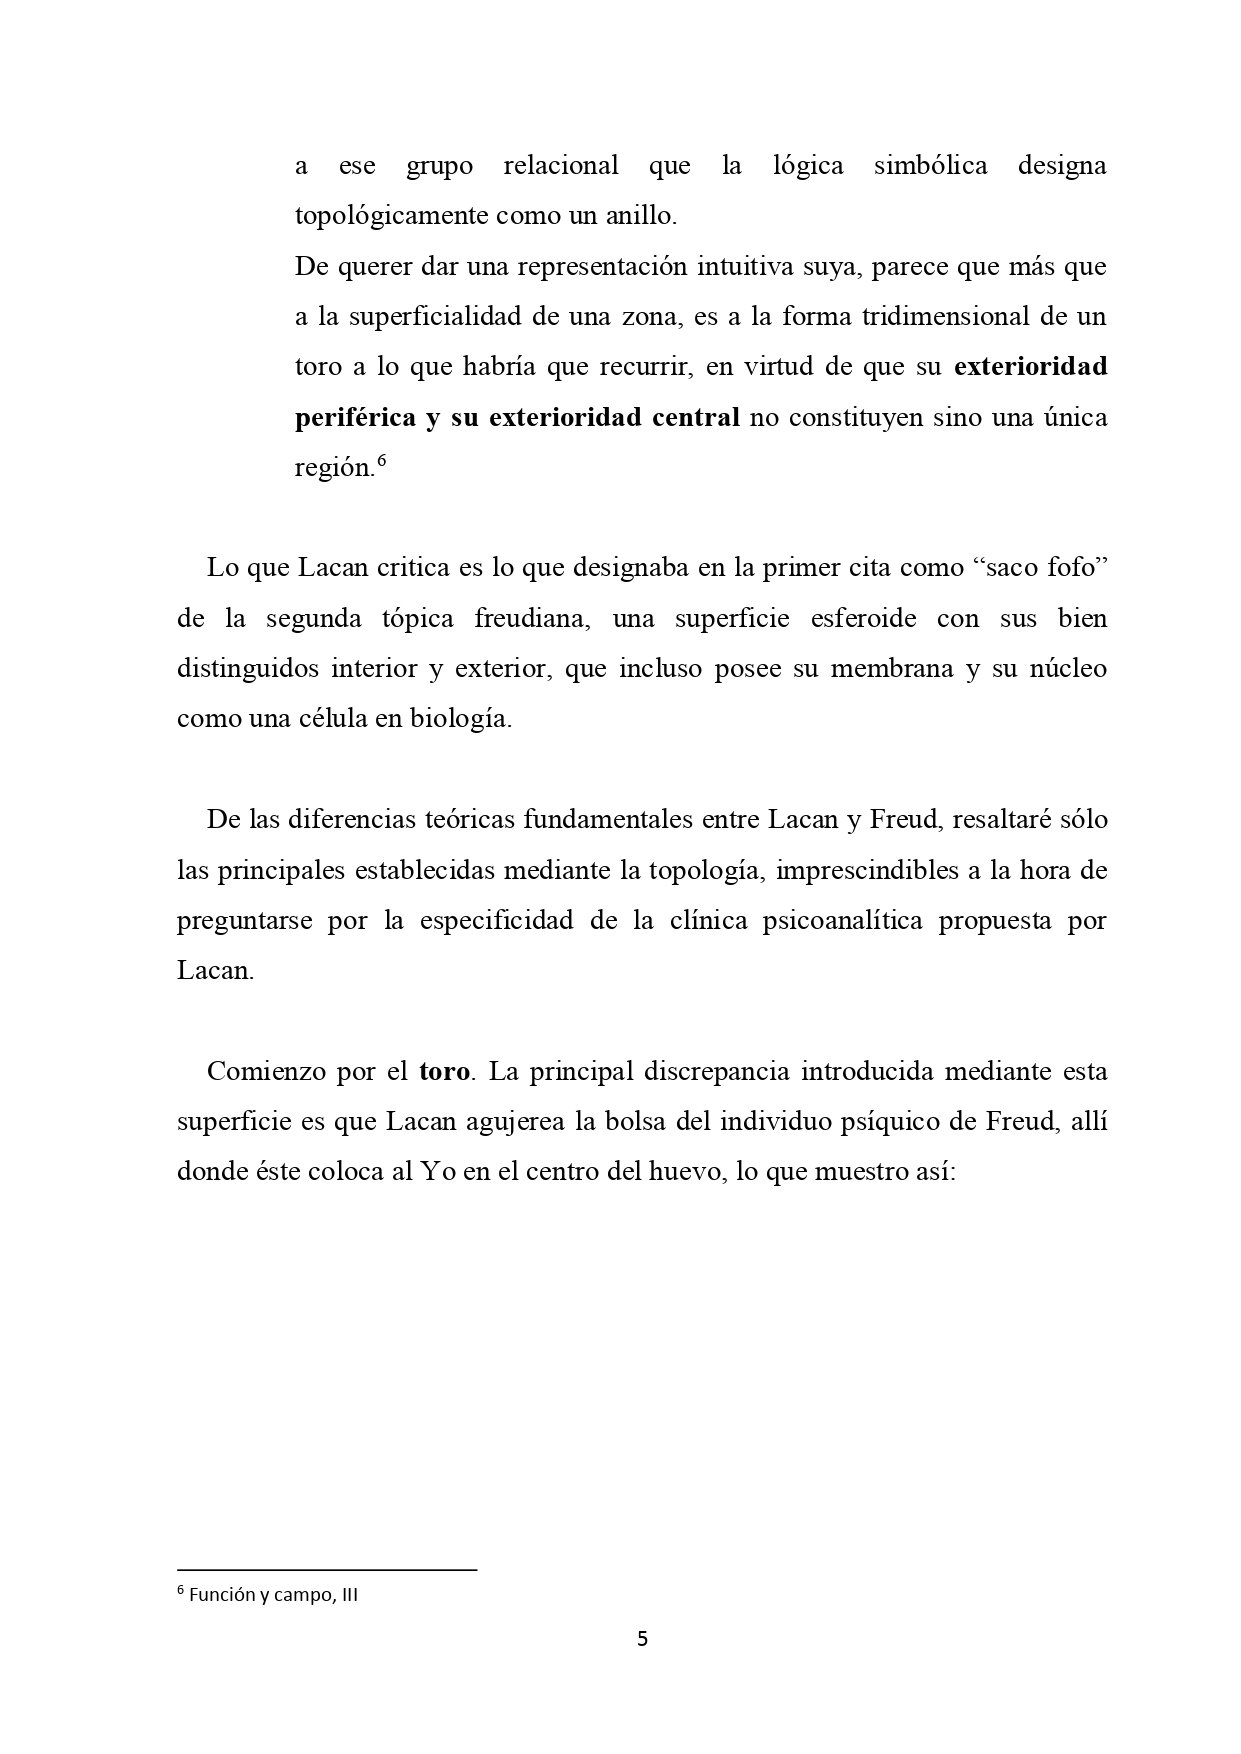 101_La topología de Lacan APOLa 16-4-2020 B (1)_page-0005